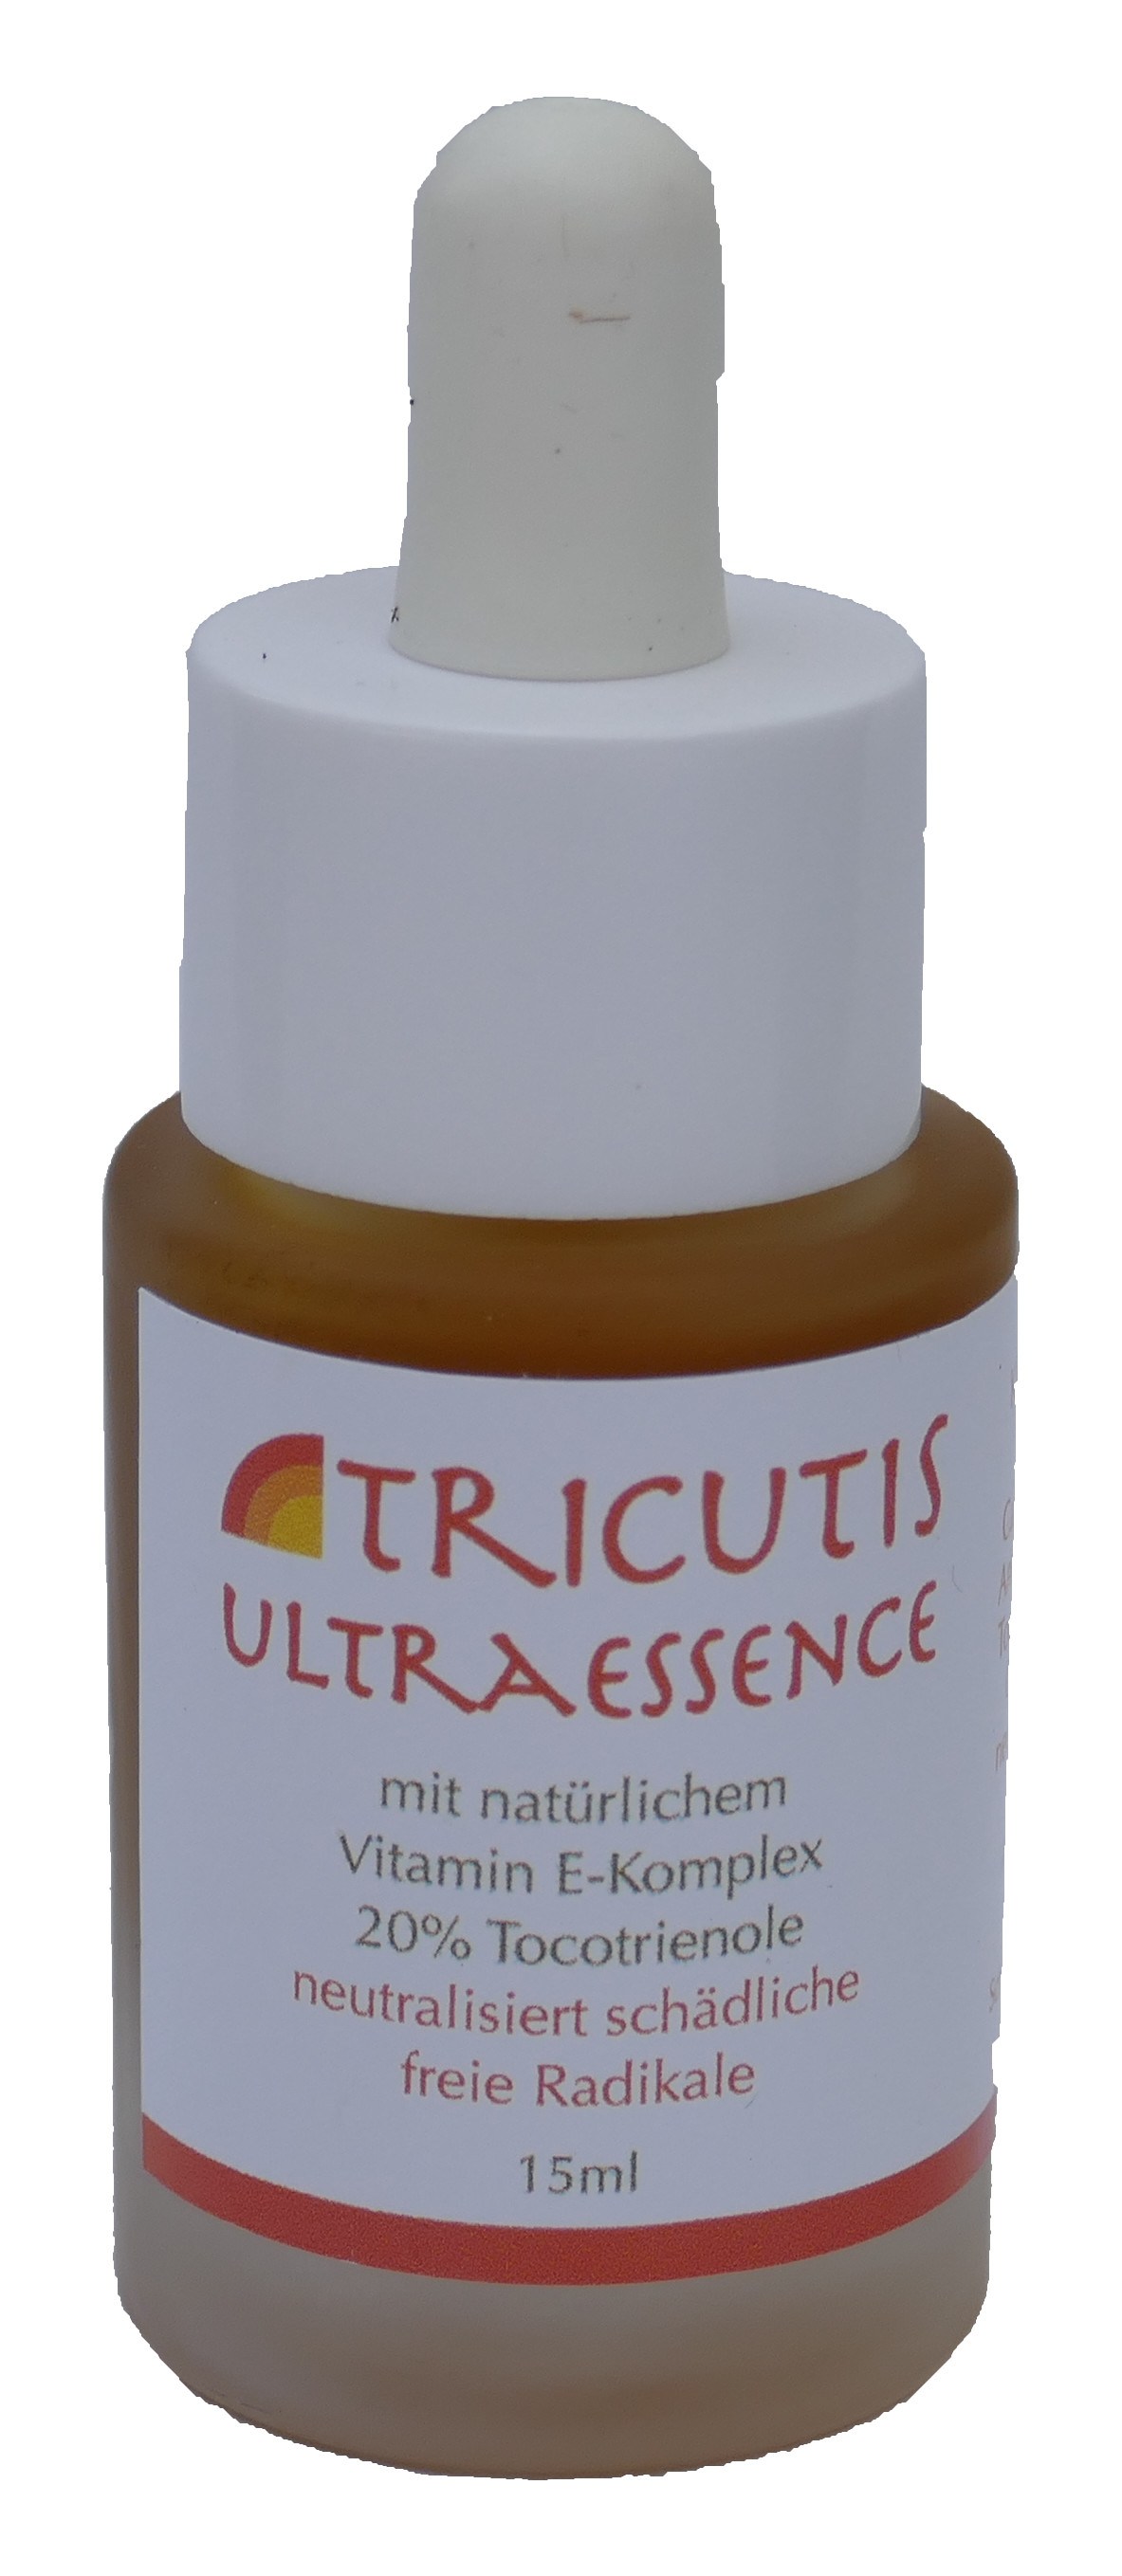 Ultraessence Super Vitamin E Öl 20%natürliche Tocotrienole